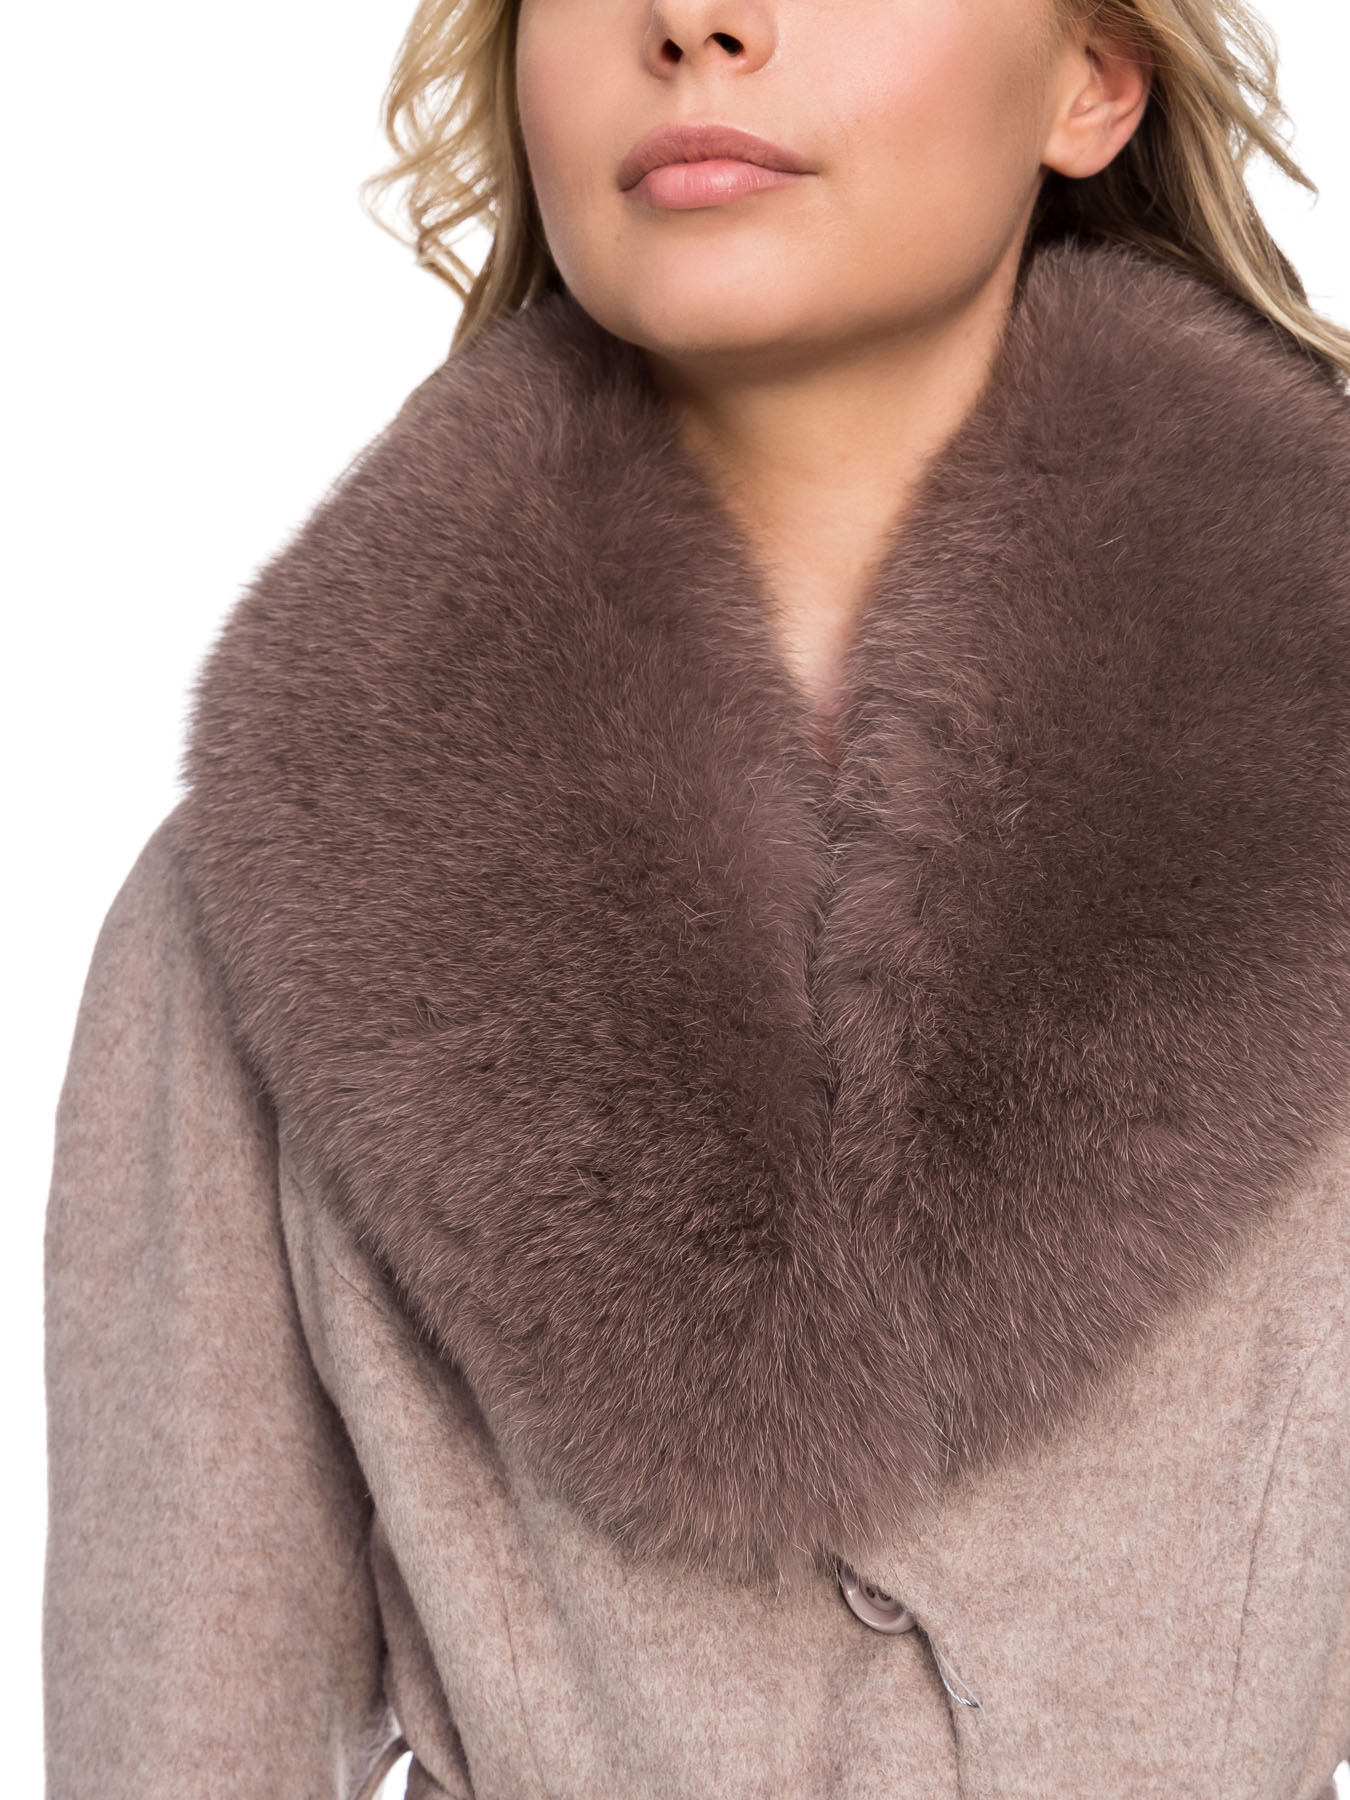 Зимнее женское пальто из шерсти со съёмным воротником